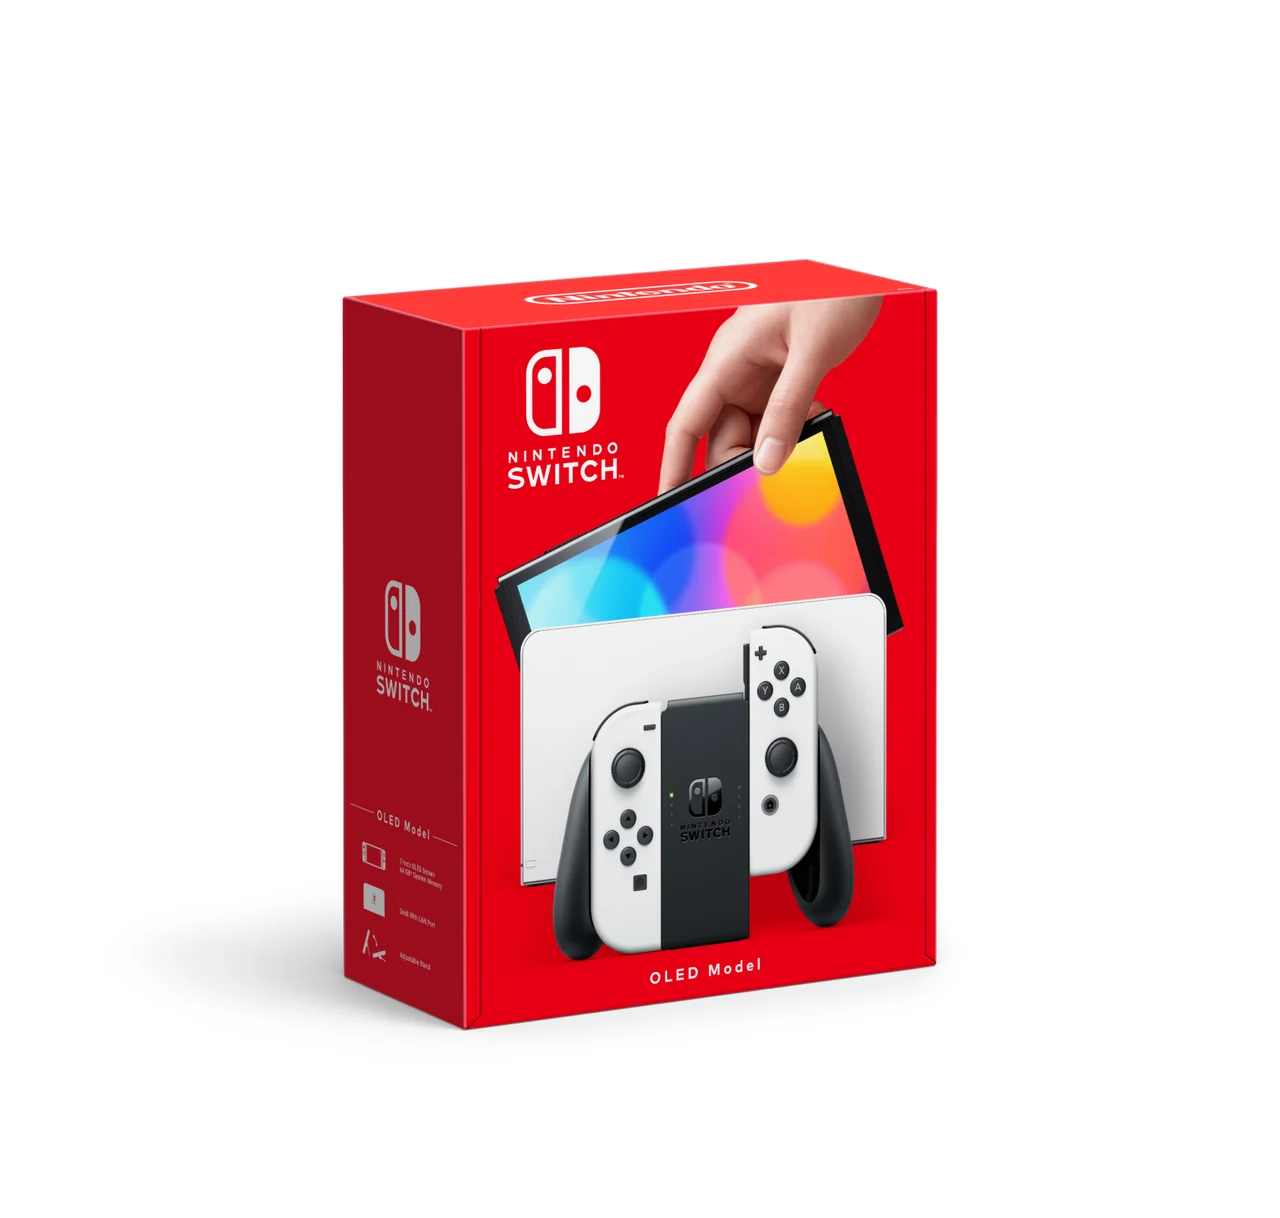 Nintendo Switch – OLED Model White set